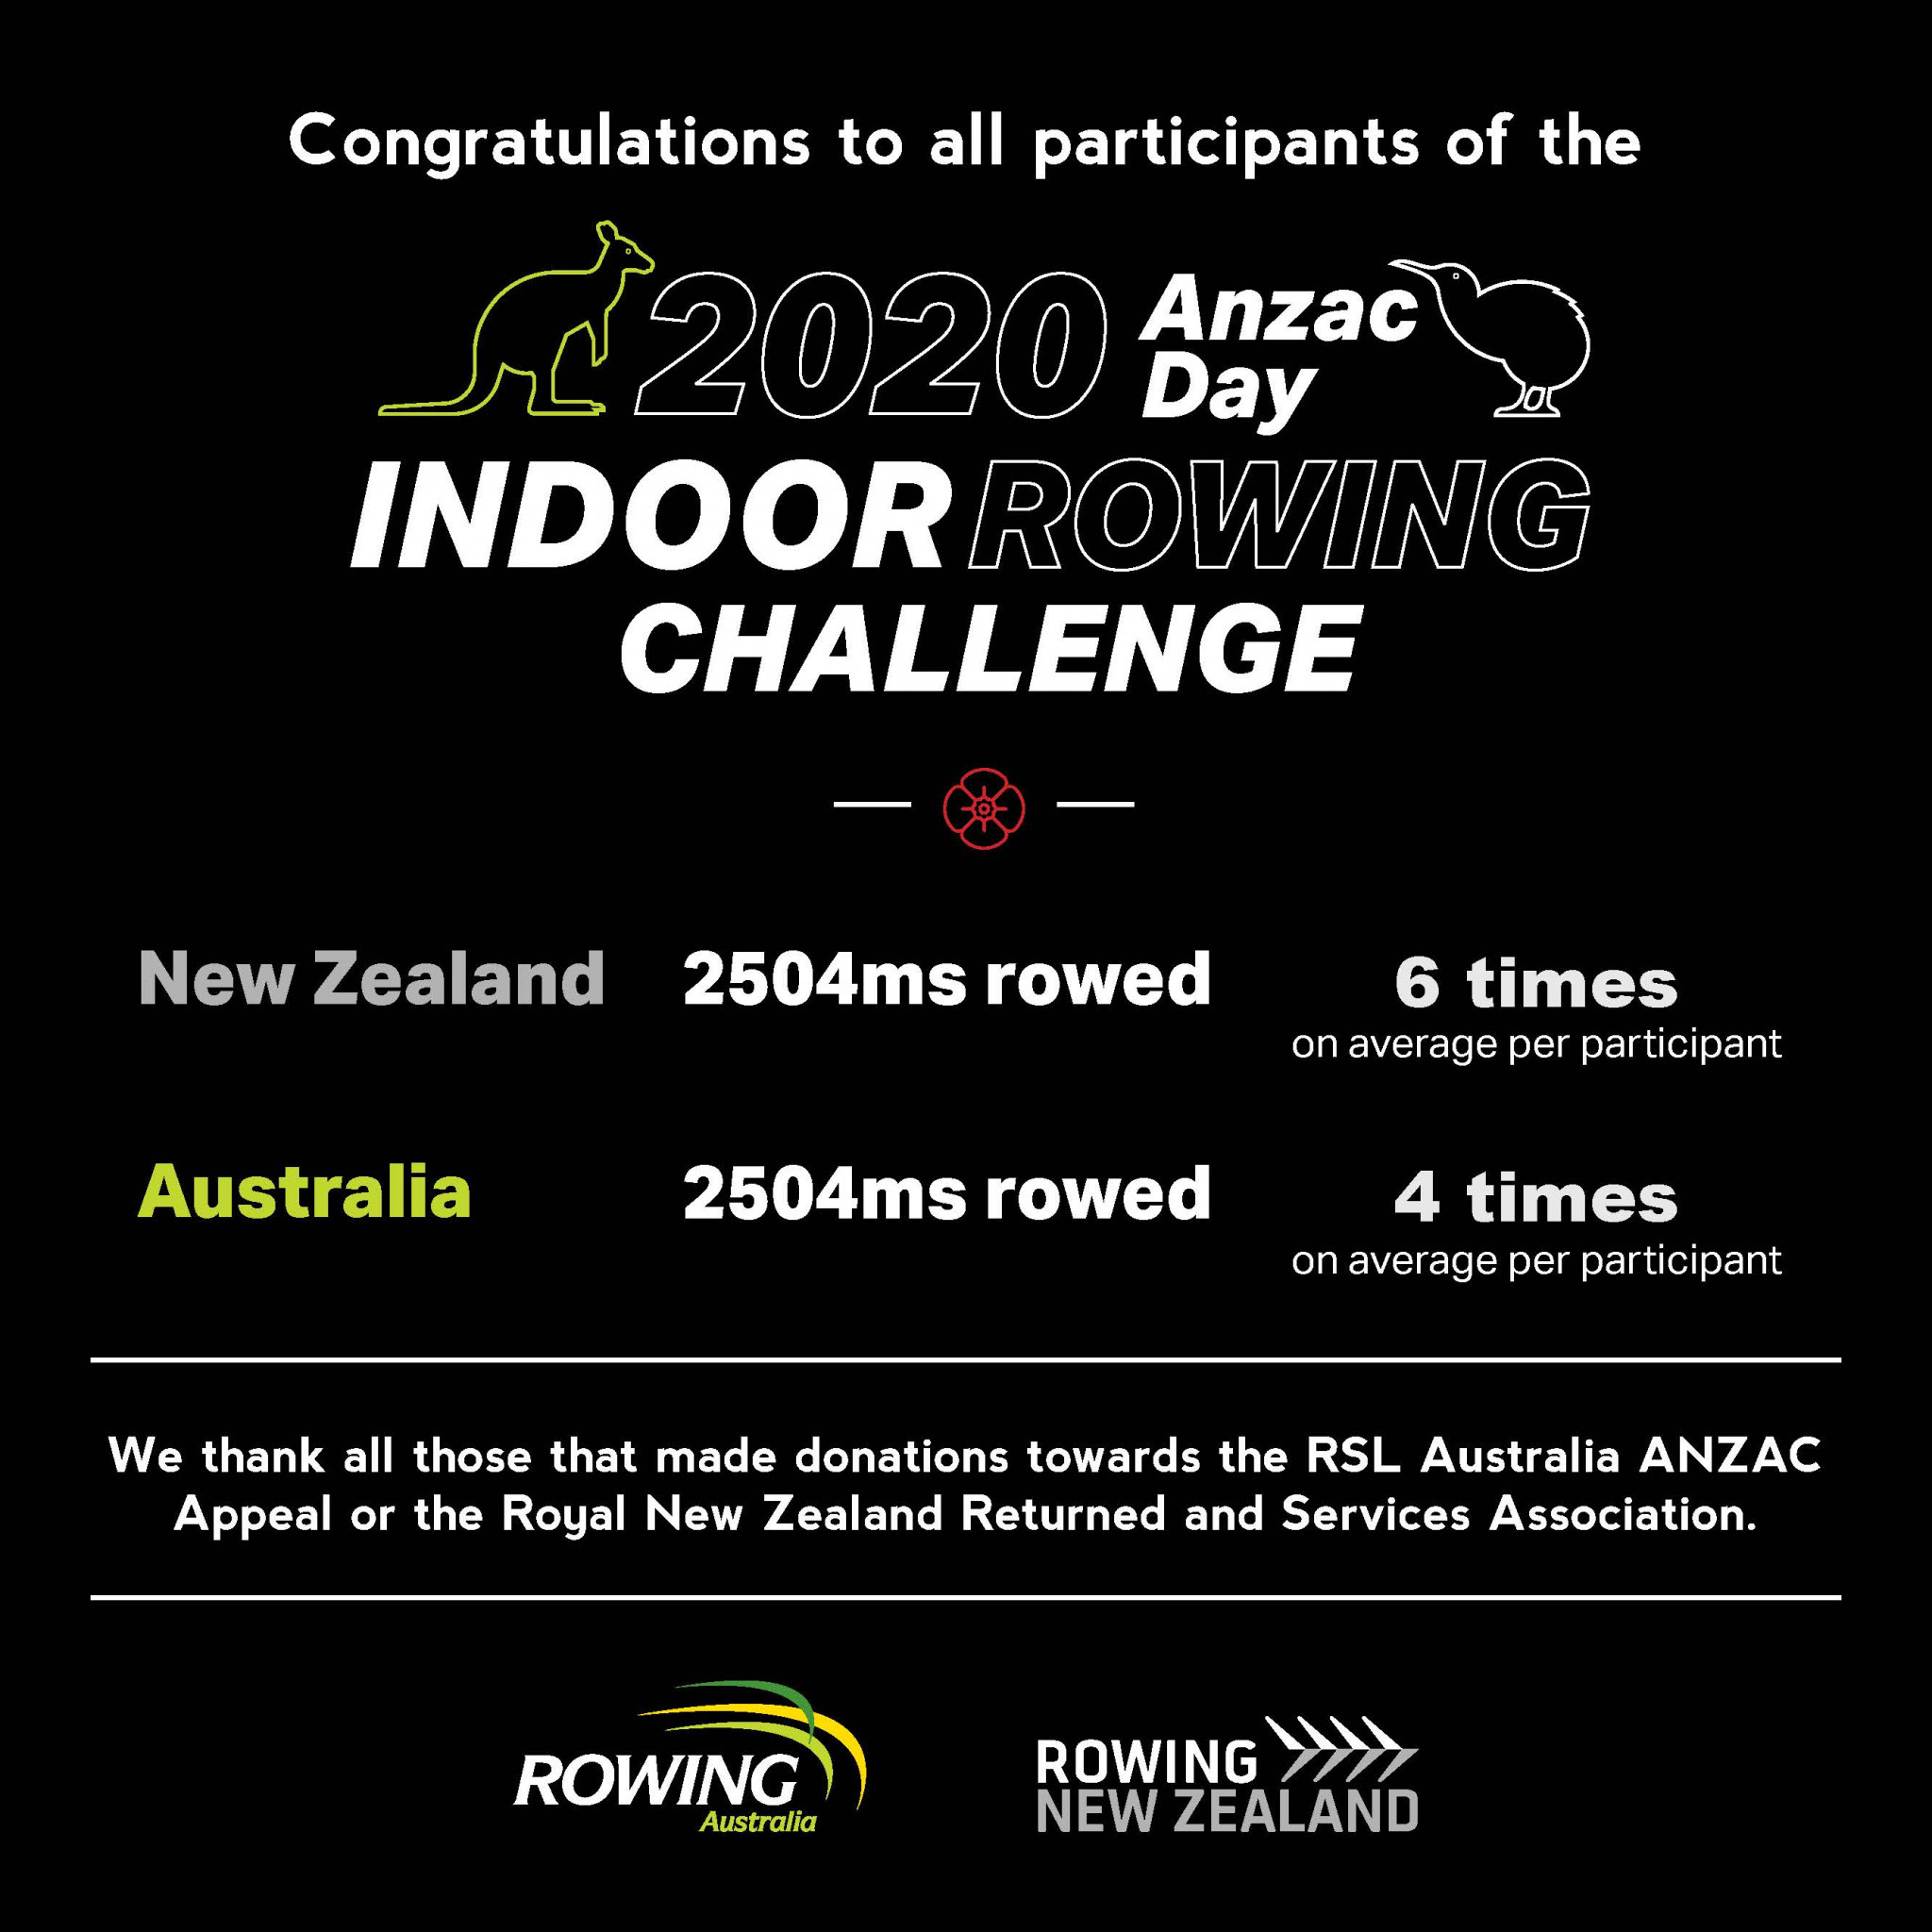 New Zealand defeat Australia in Anzac Day Indoor Rowing Challenge